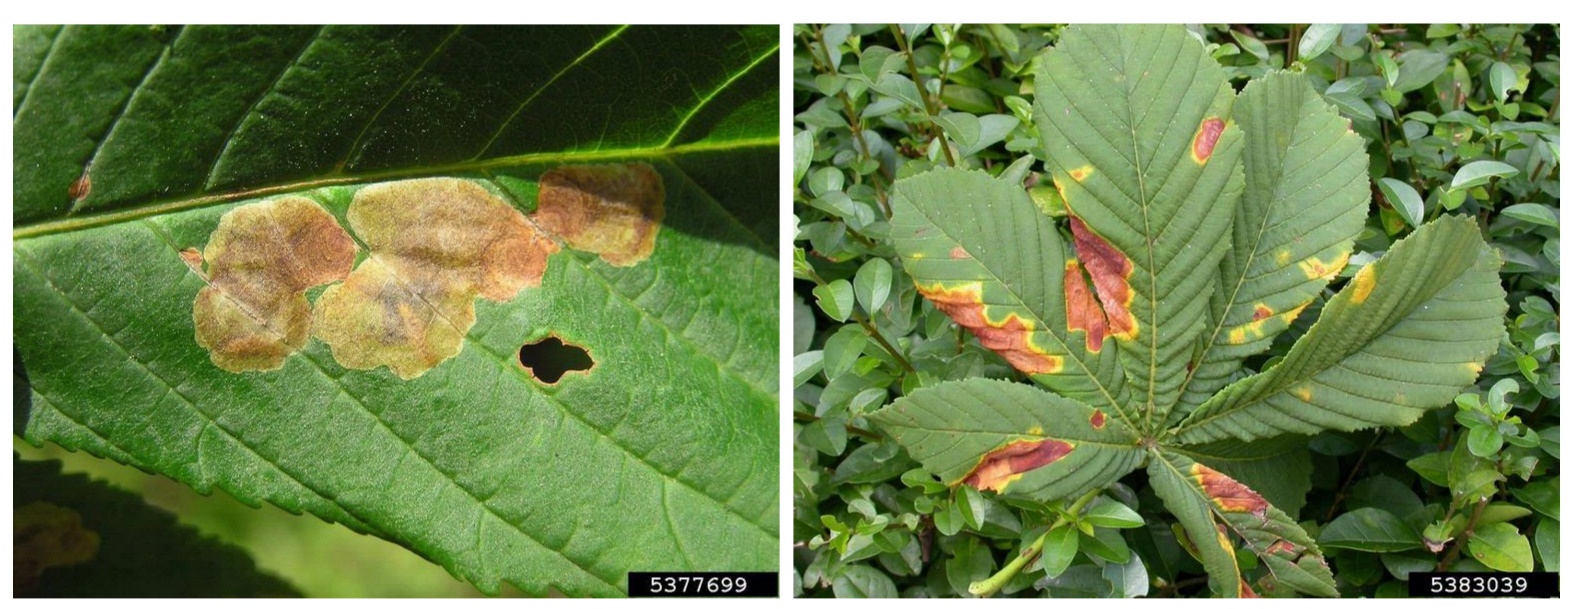 HC leaves with leaf blotch (Phyllosticta paviae) FR.jpg